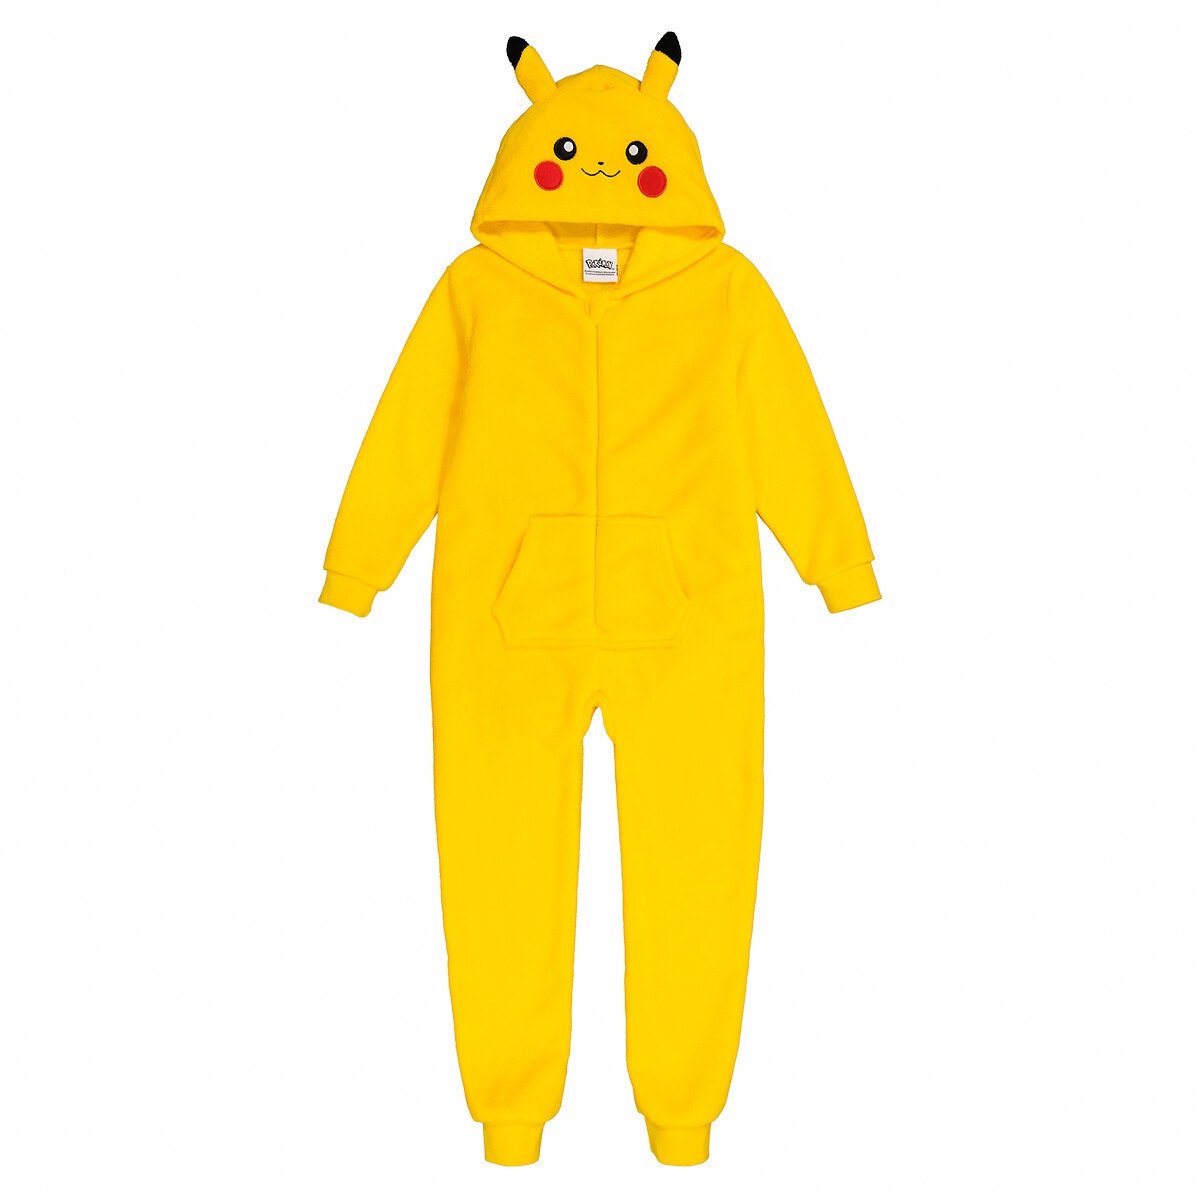 Surpyjama à capuche en polaire, pikachu jaune Pokemon